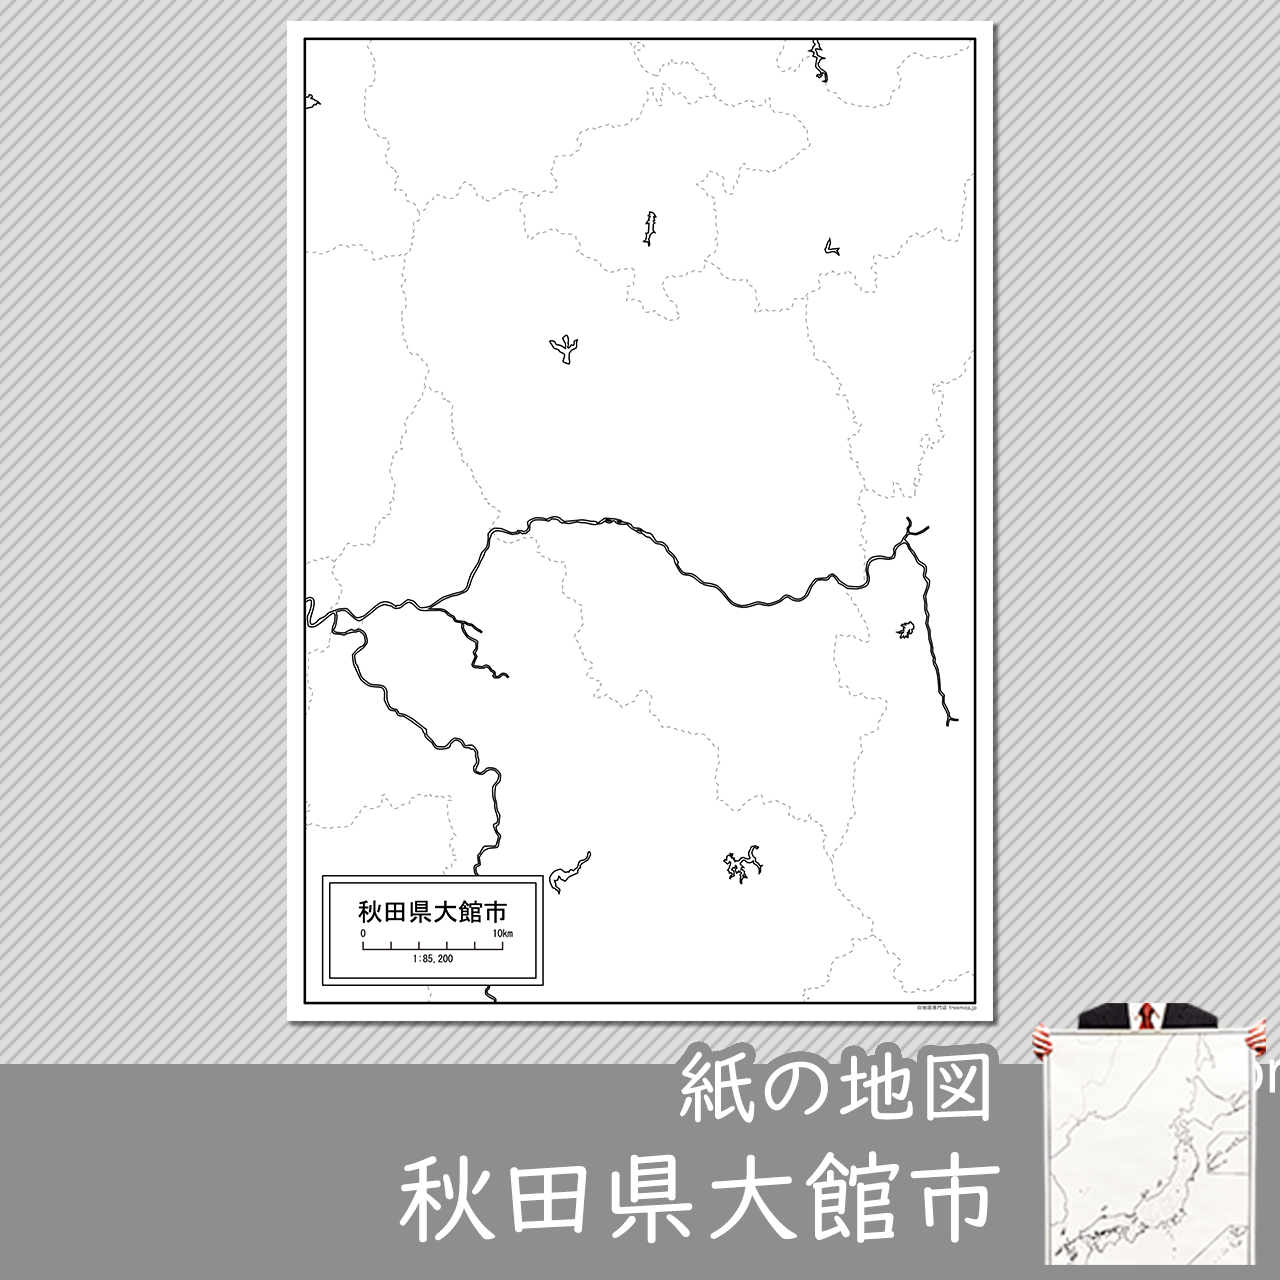 大館市の紙の白地図のサムネイル